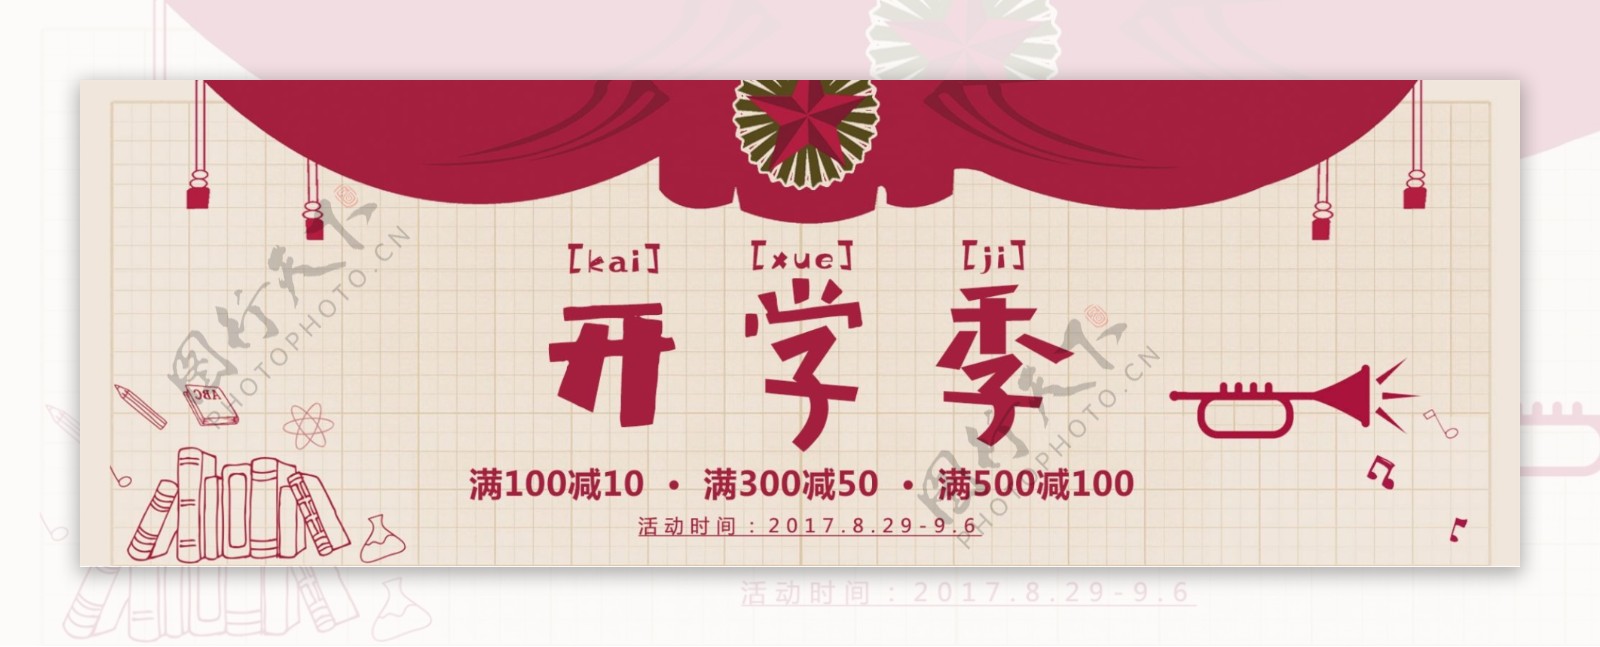 电商淘宝天猫开学季节日促销海报通用模板banner设计